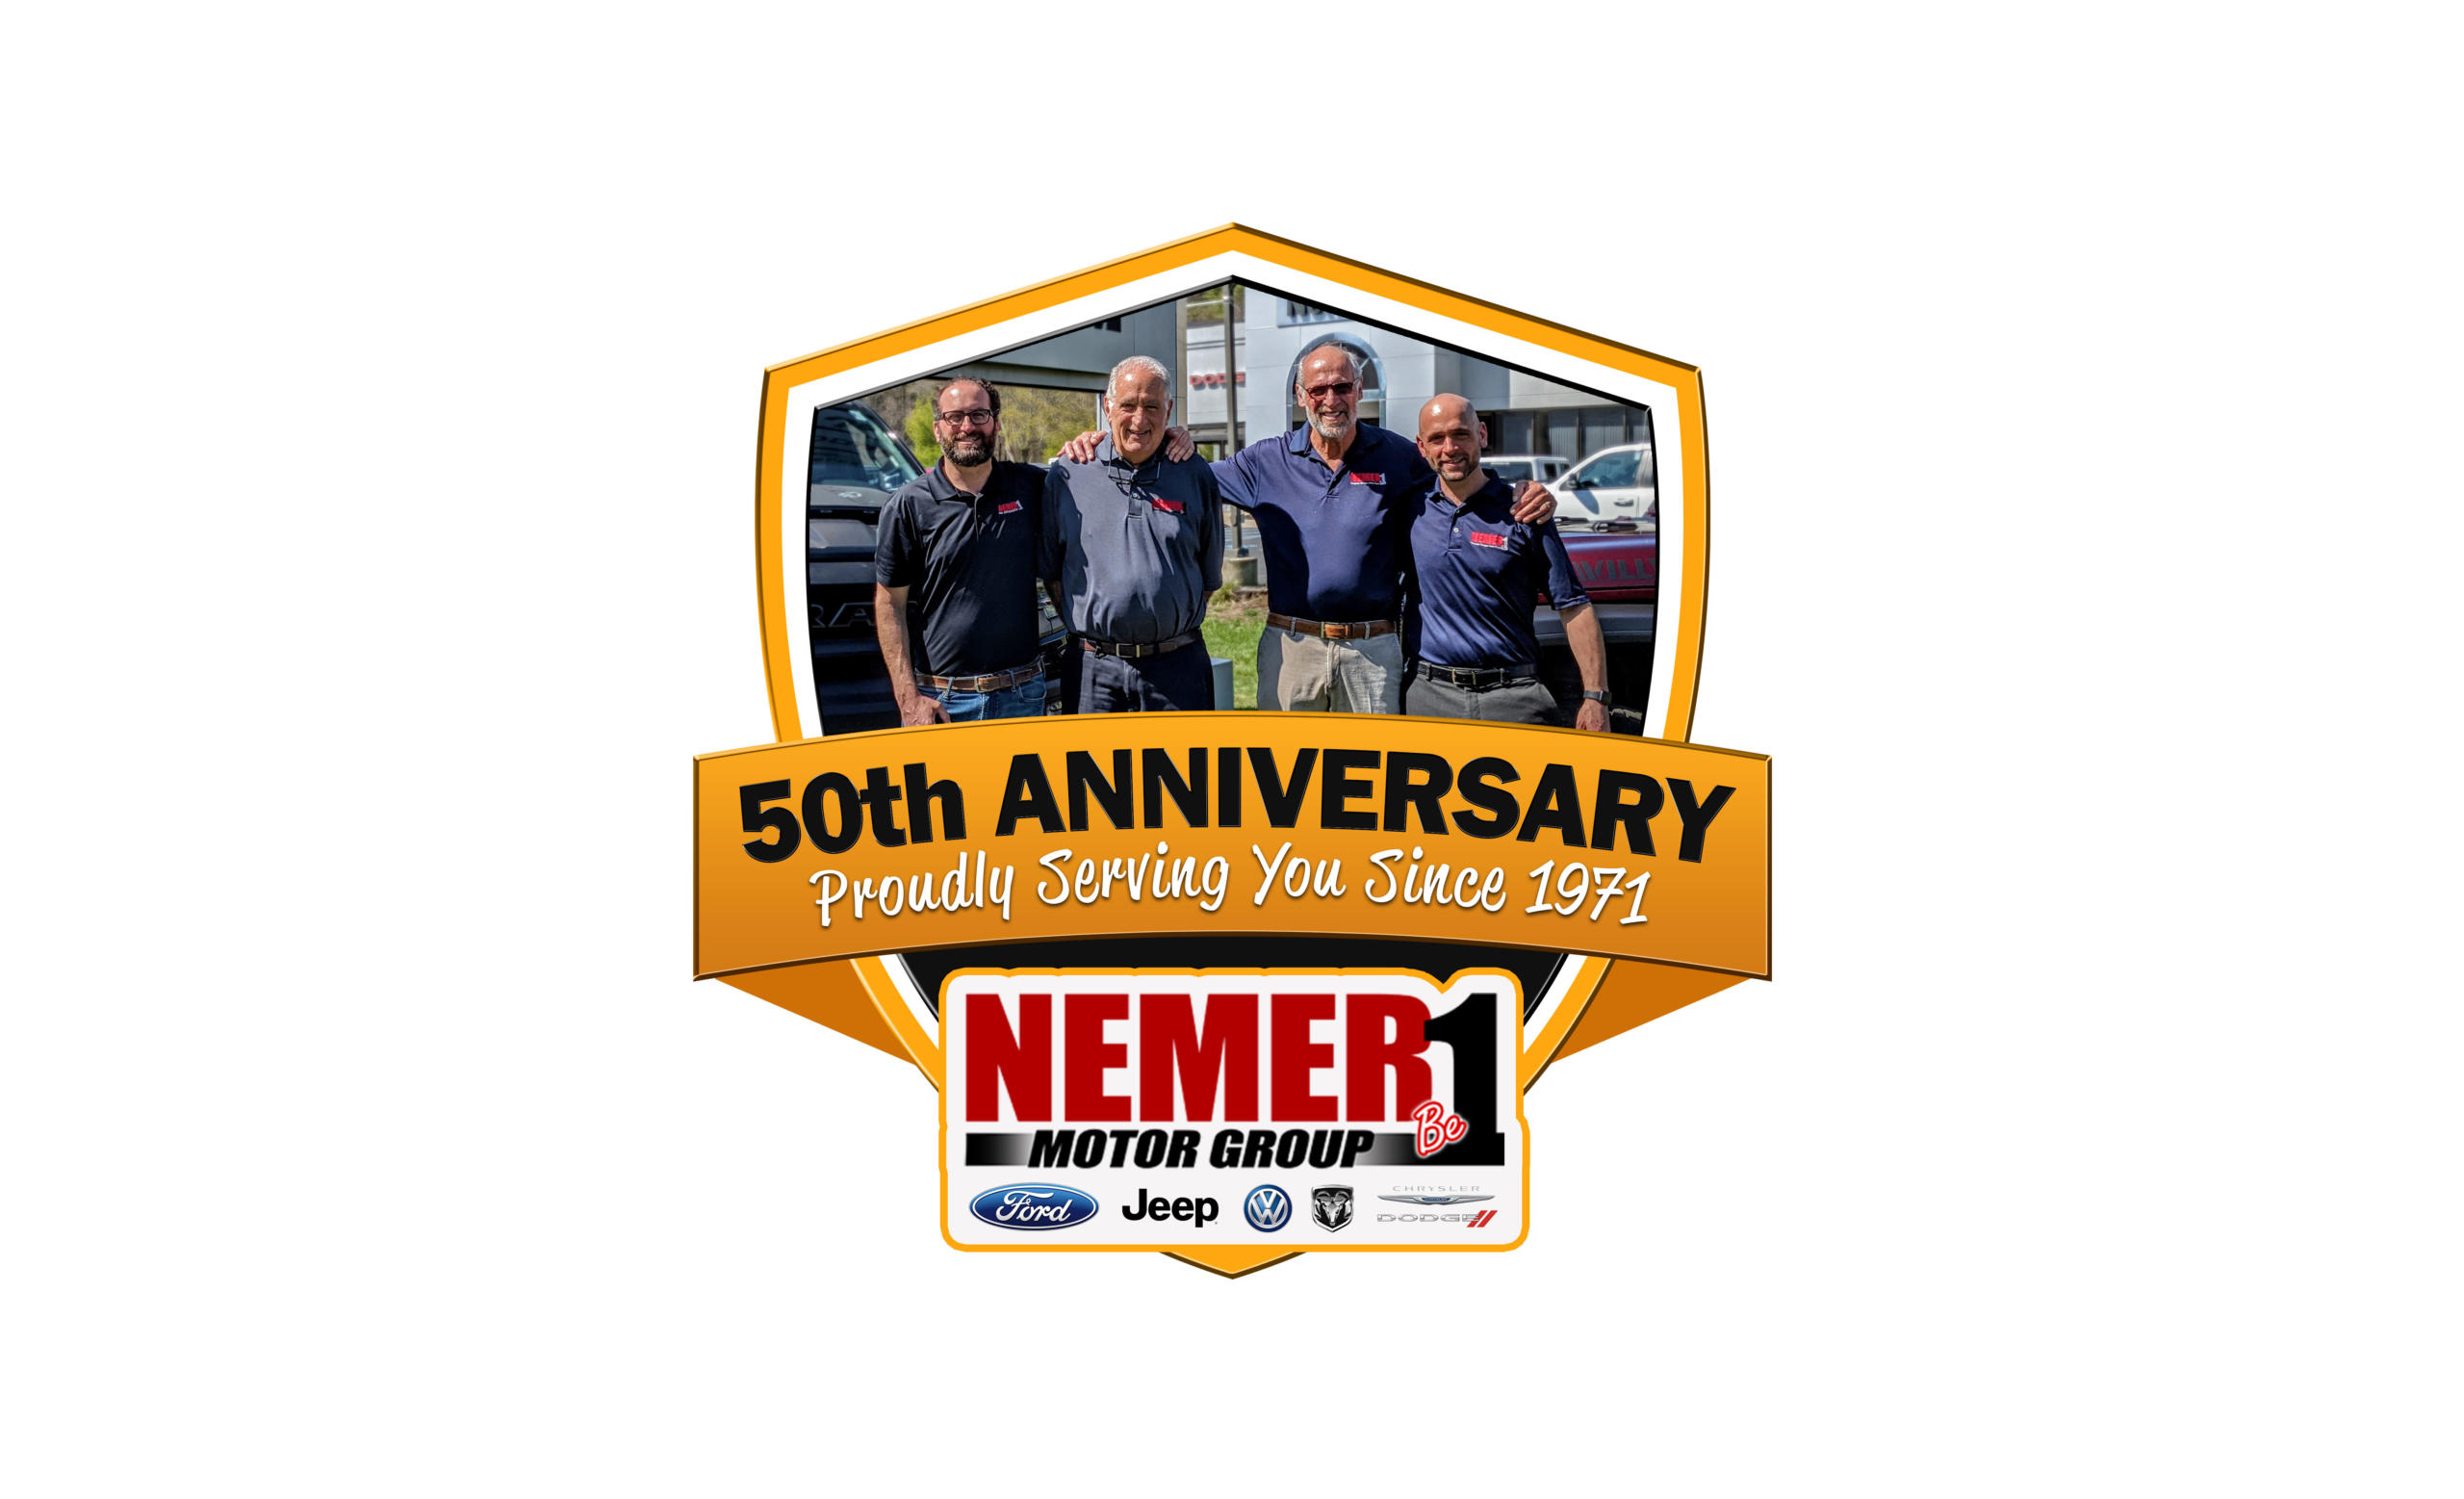 Nemer Motor Group